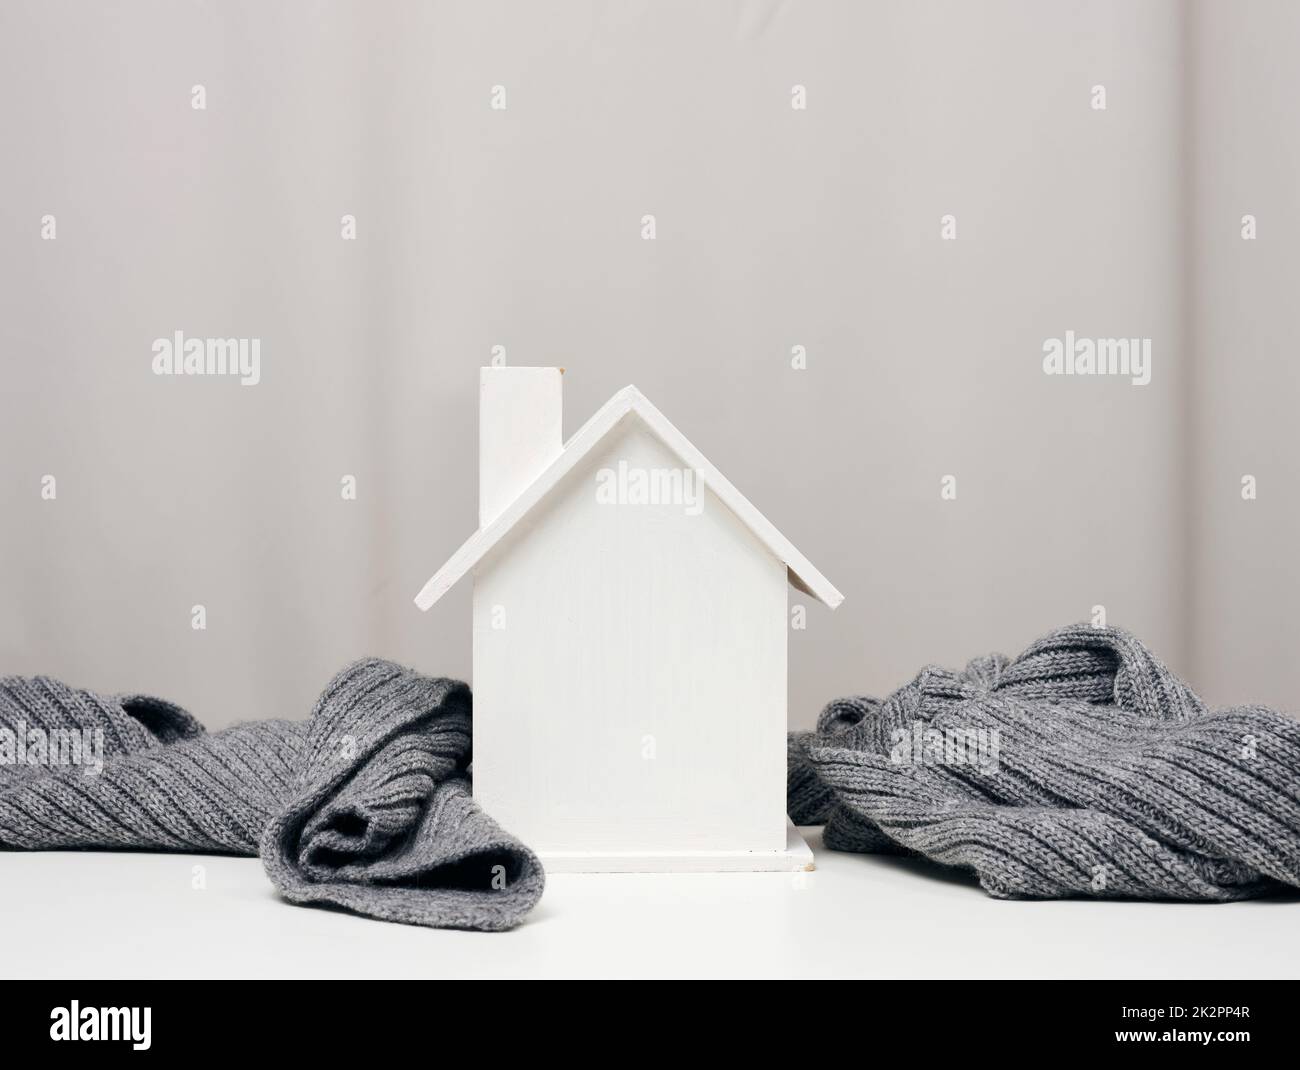 maison miniature en bois blanc enveloppée d'une écharpe tricotée grise.Concept d'isolation de bâtiment, prêts pour réparations Banque D'Images